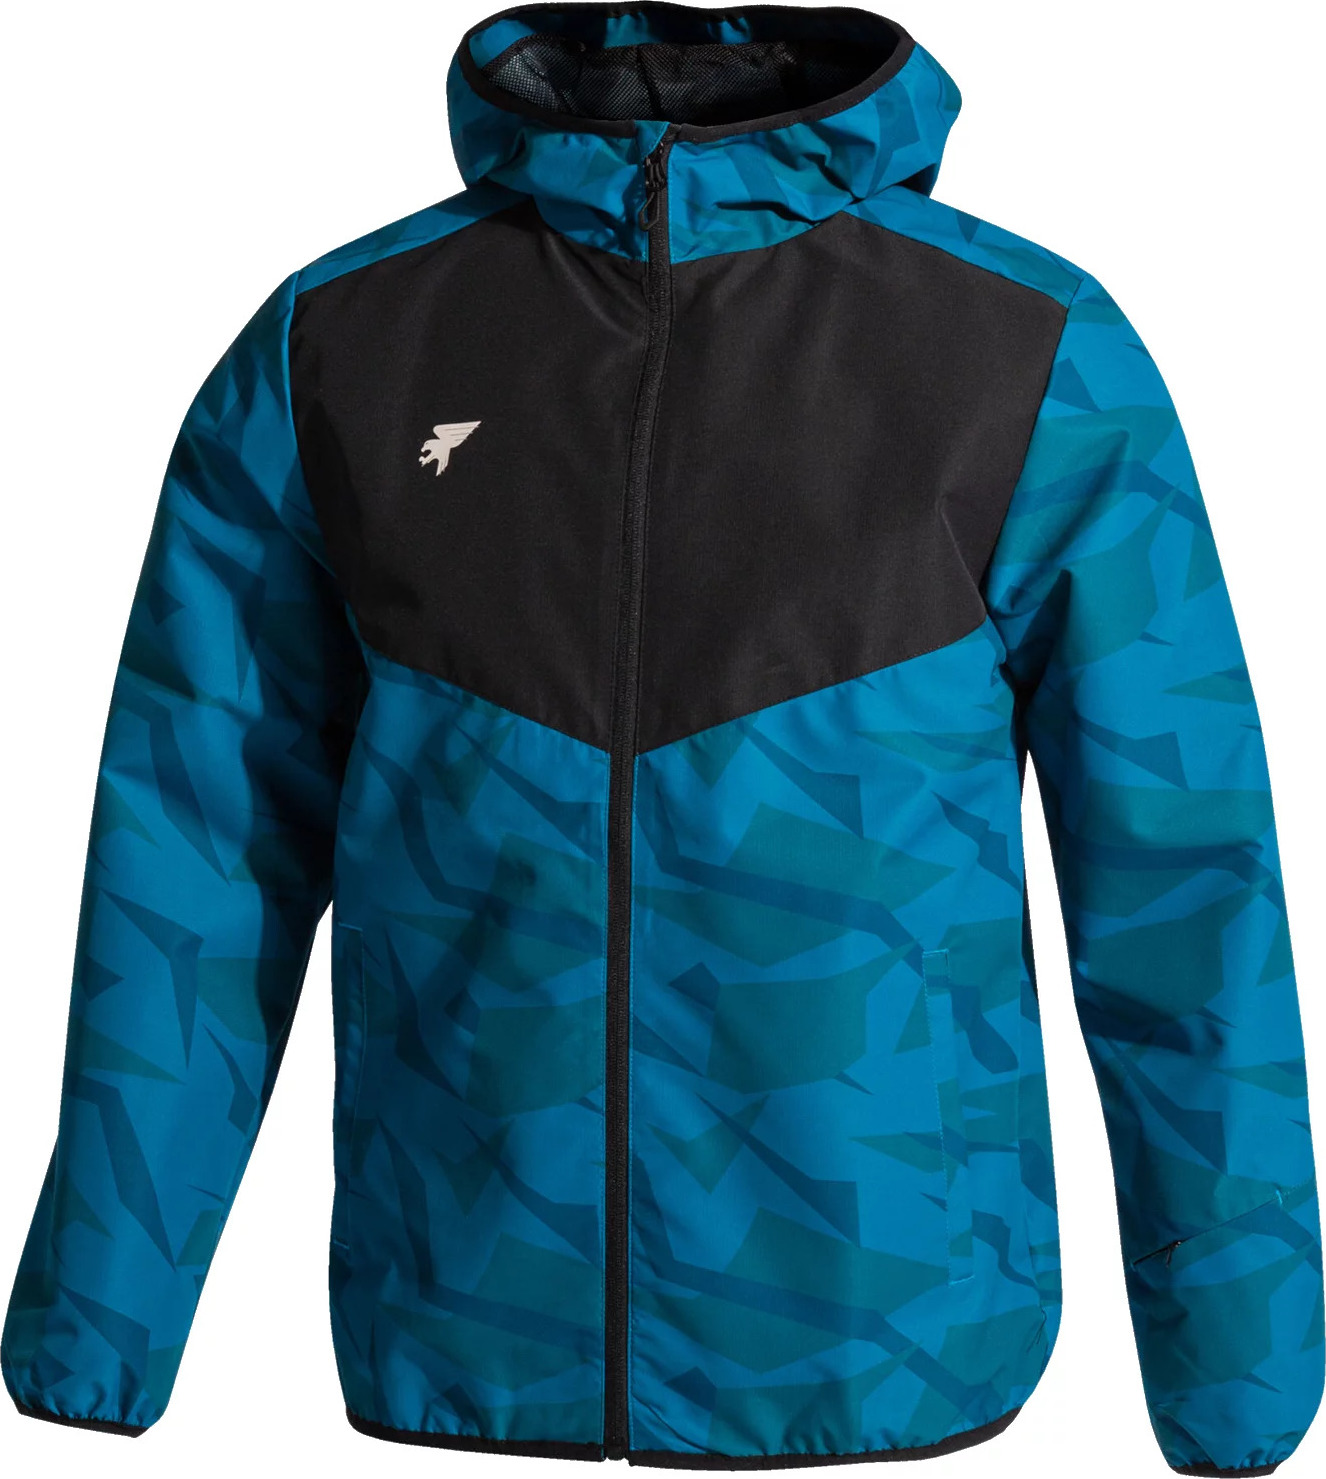 Modrá vzorovaná sportovní bunda Joma Explorer Rain Jacket 103017-713 Velikost: L